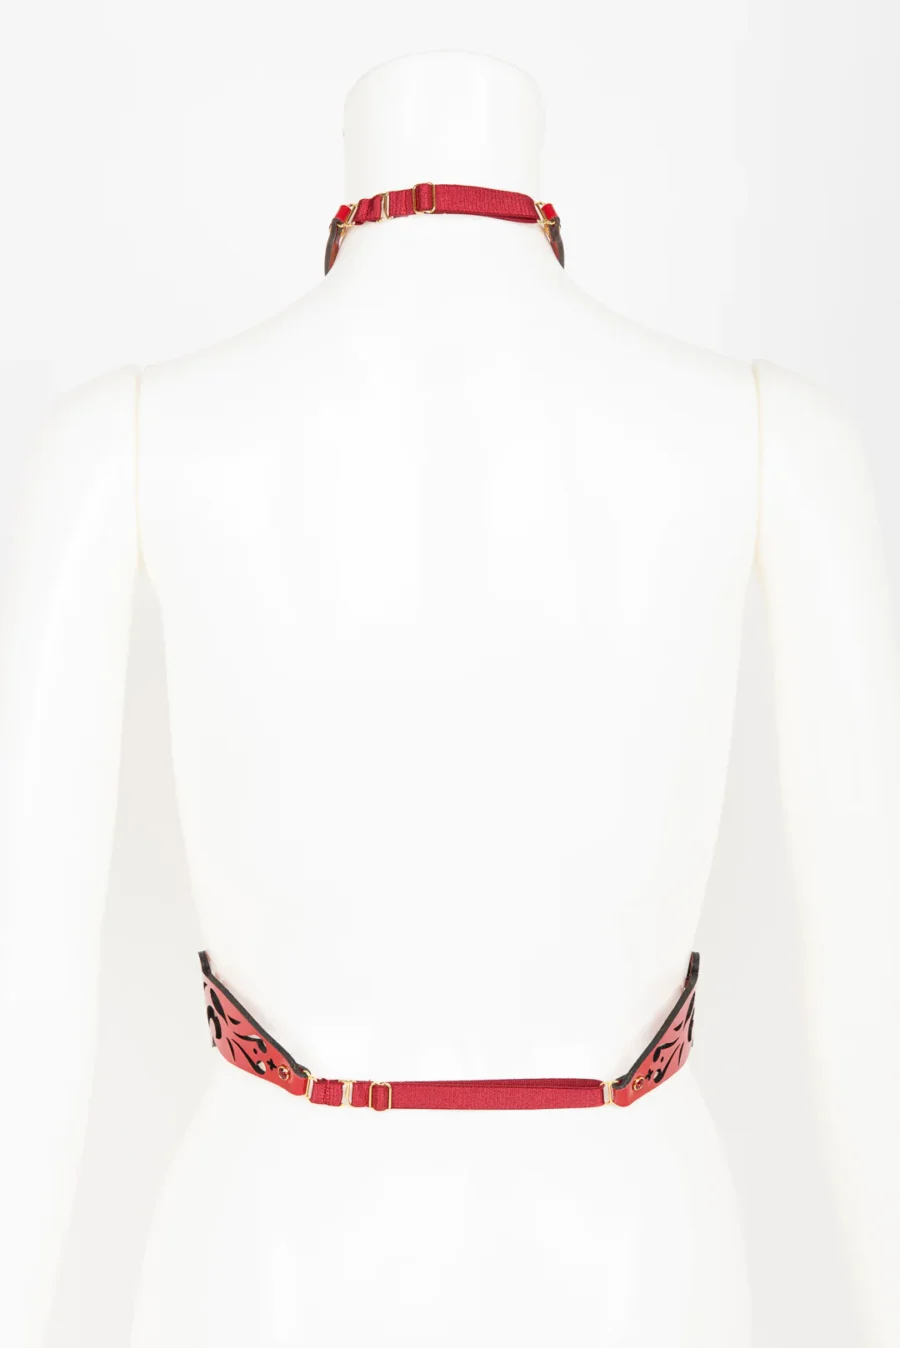 Fraulein Kink Rosso Bianco Nero Harness